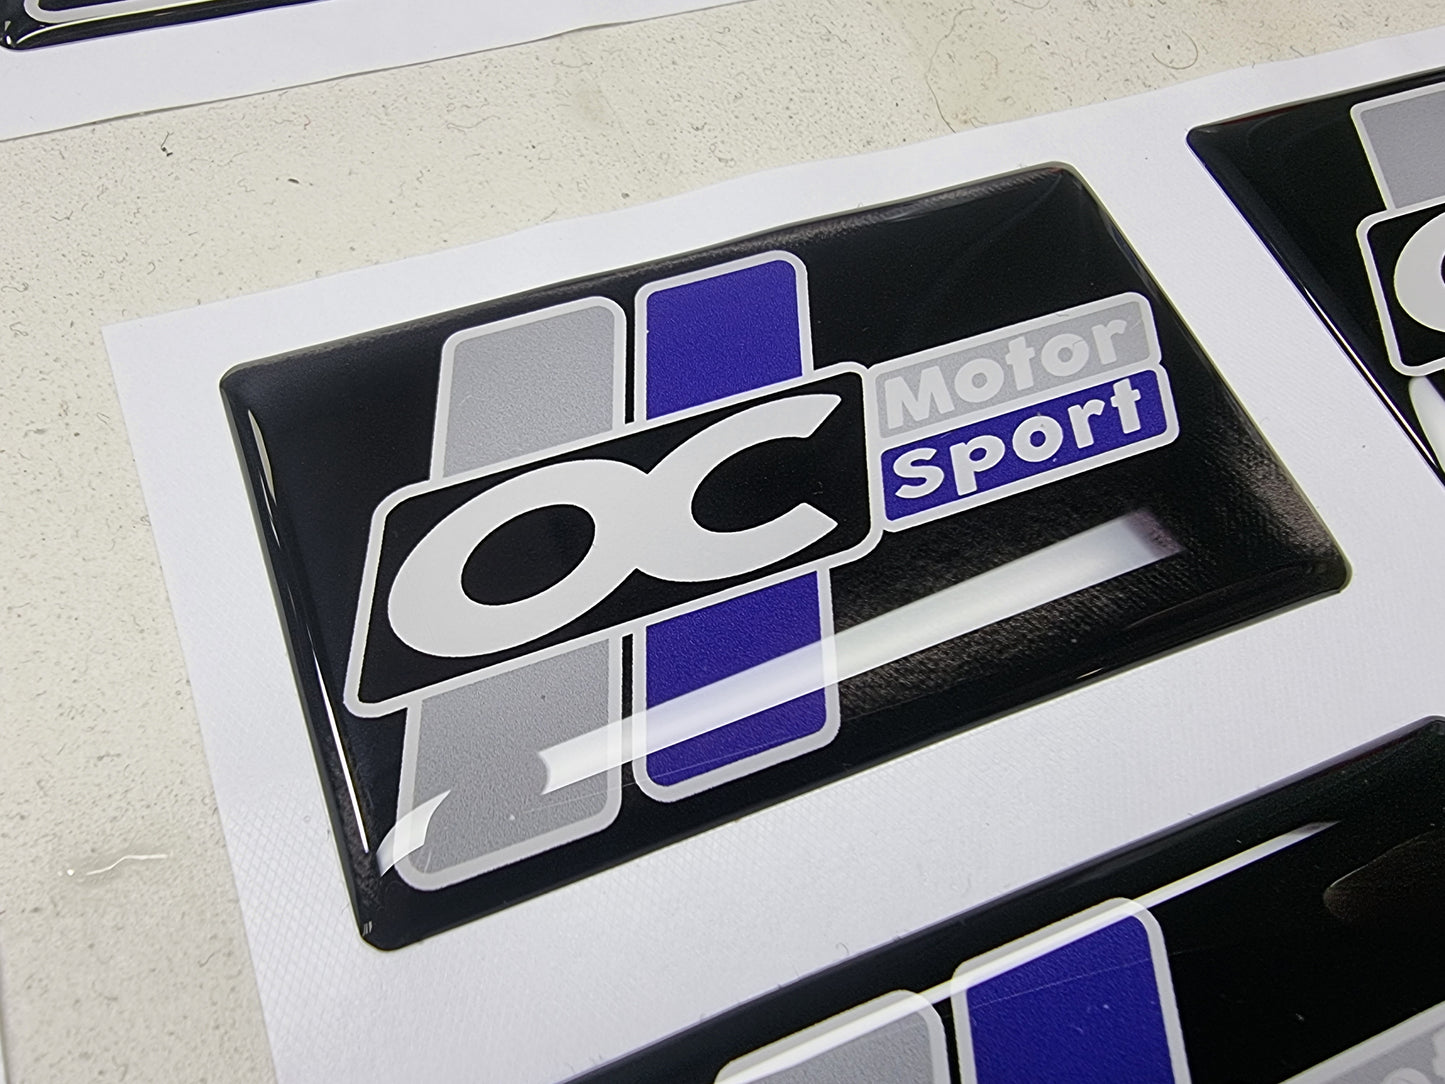 OC Motorsport Boot Lid Gel Badge